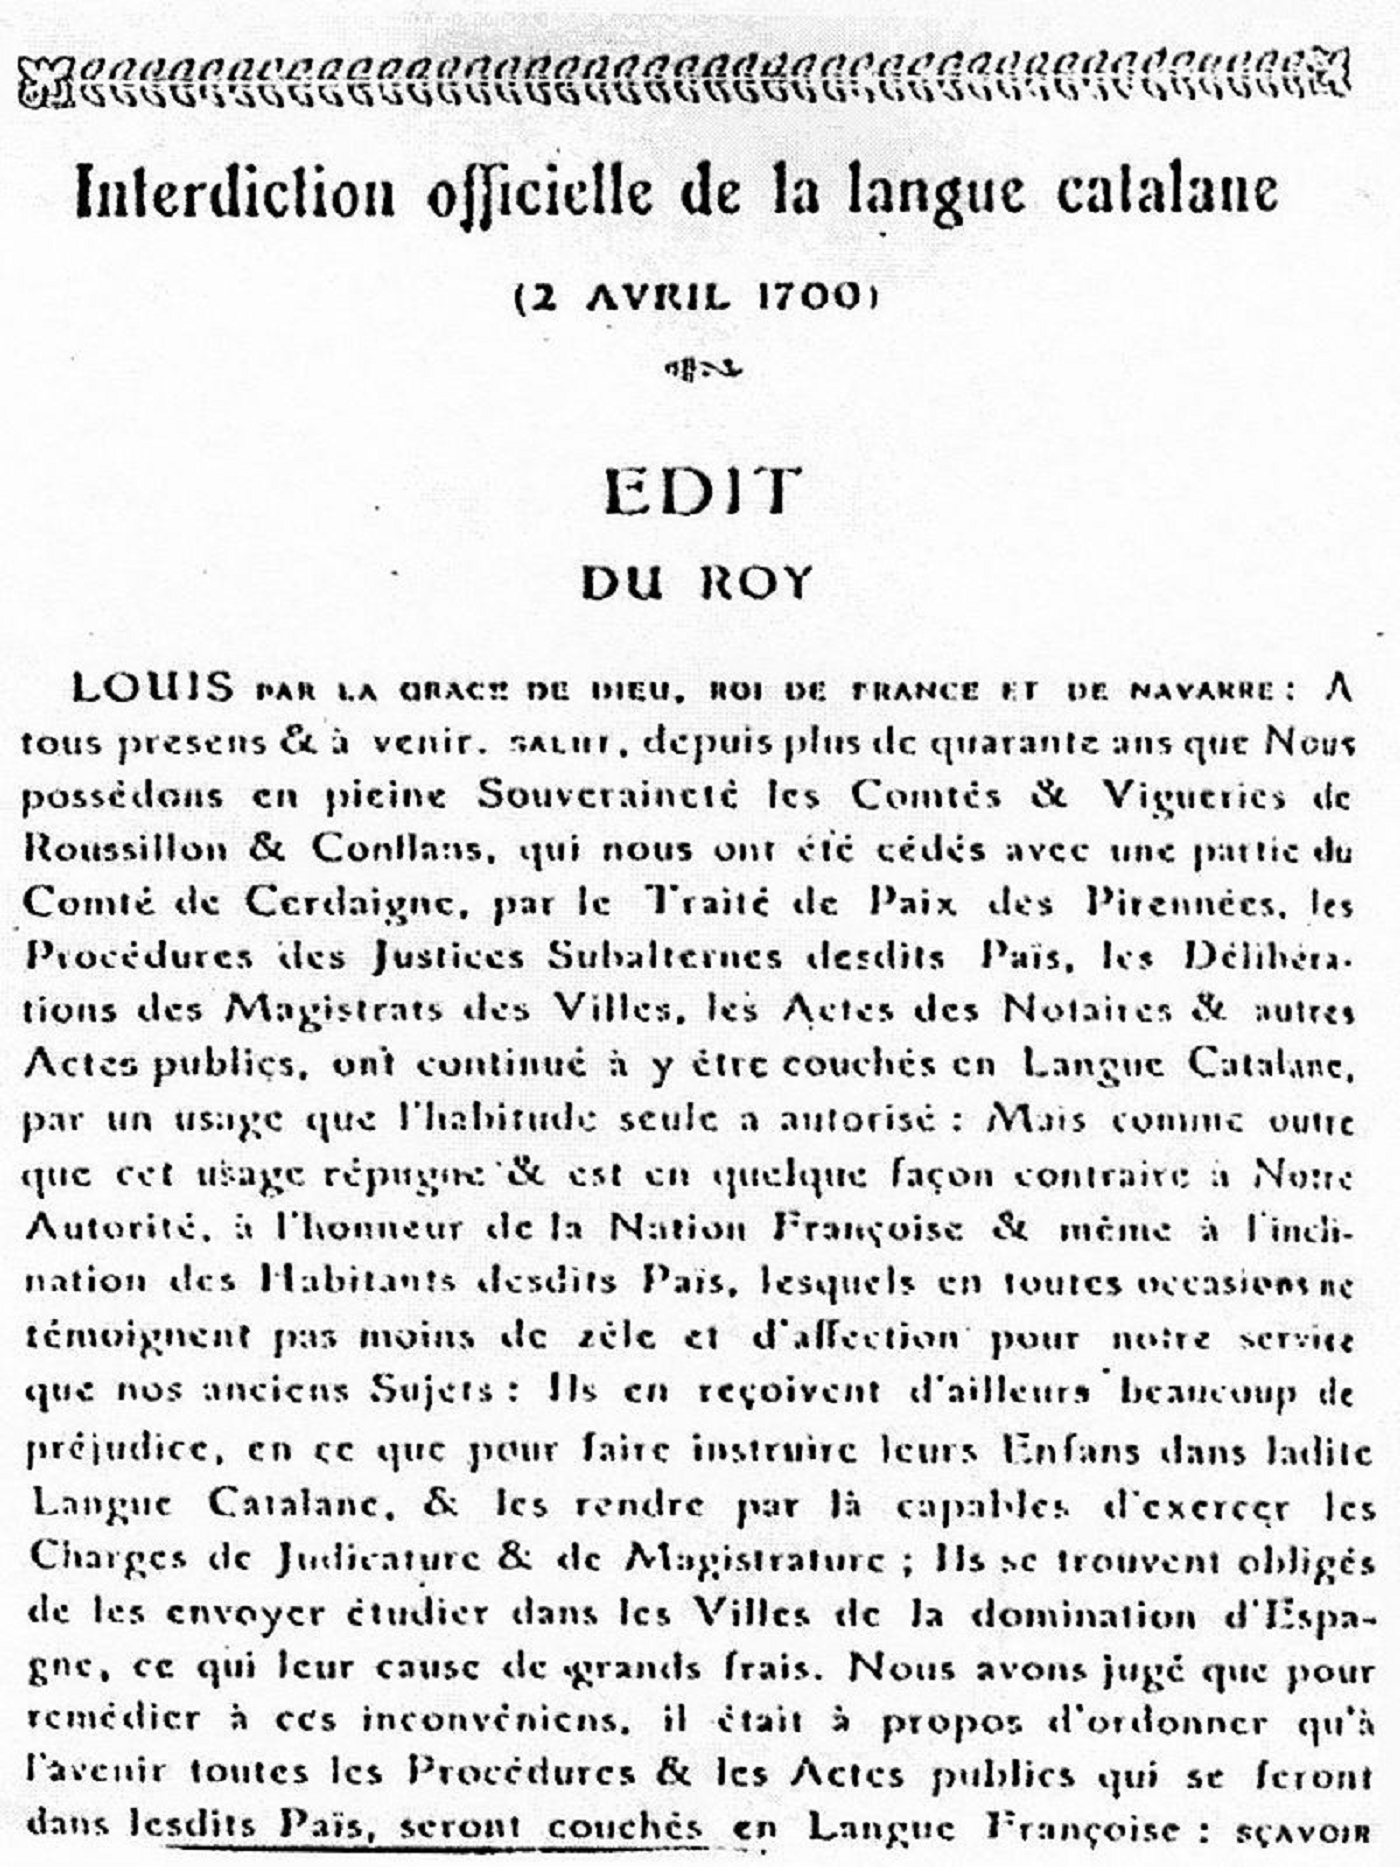 Luis XIV: "El uso del catalán repugna y es contrario al honor de la nación francesa"